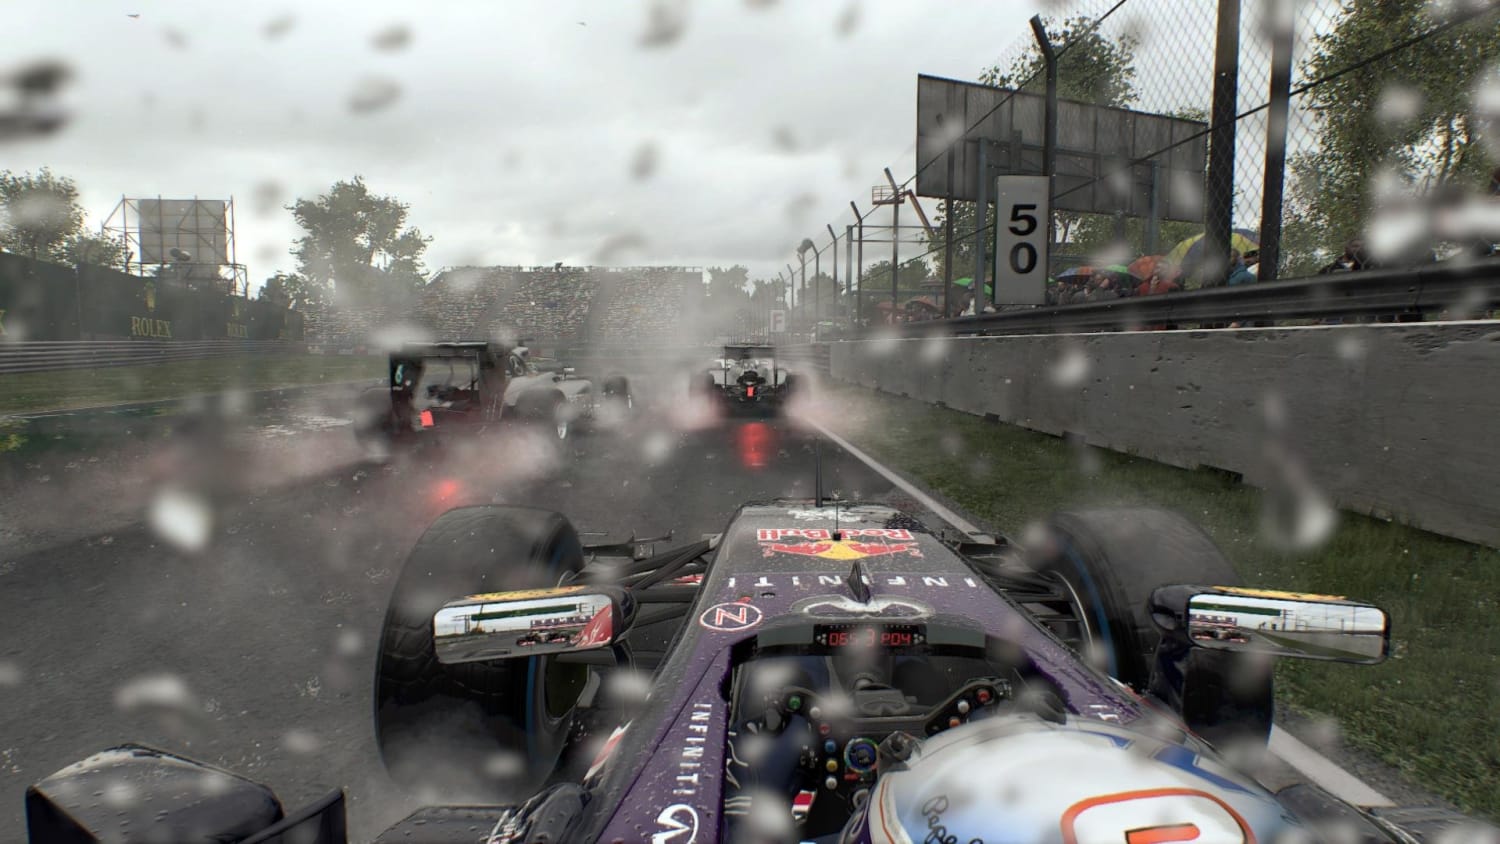 New F1 2015 screenshots revealed